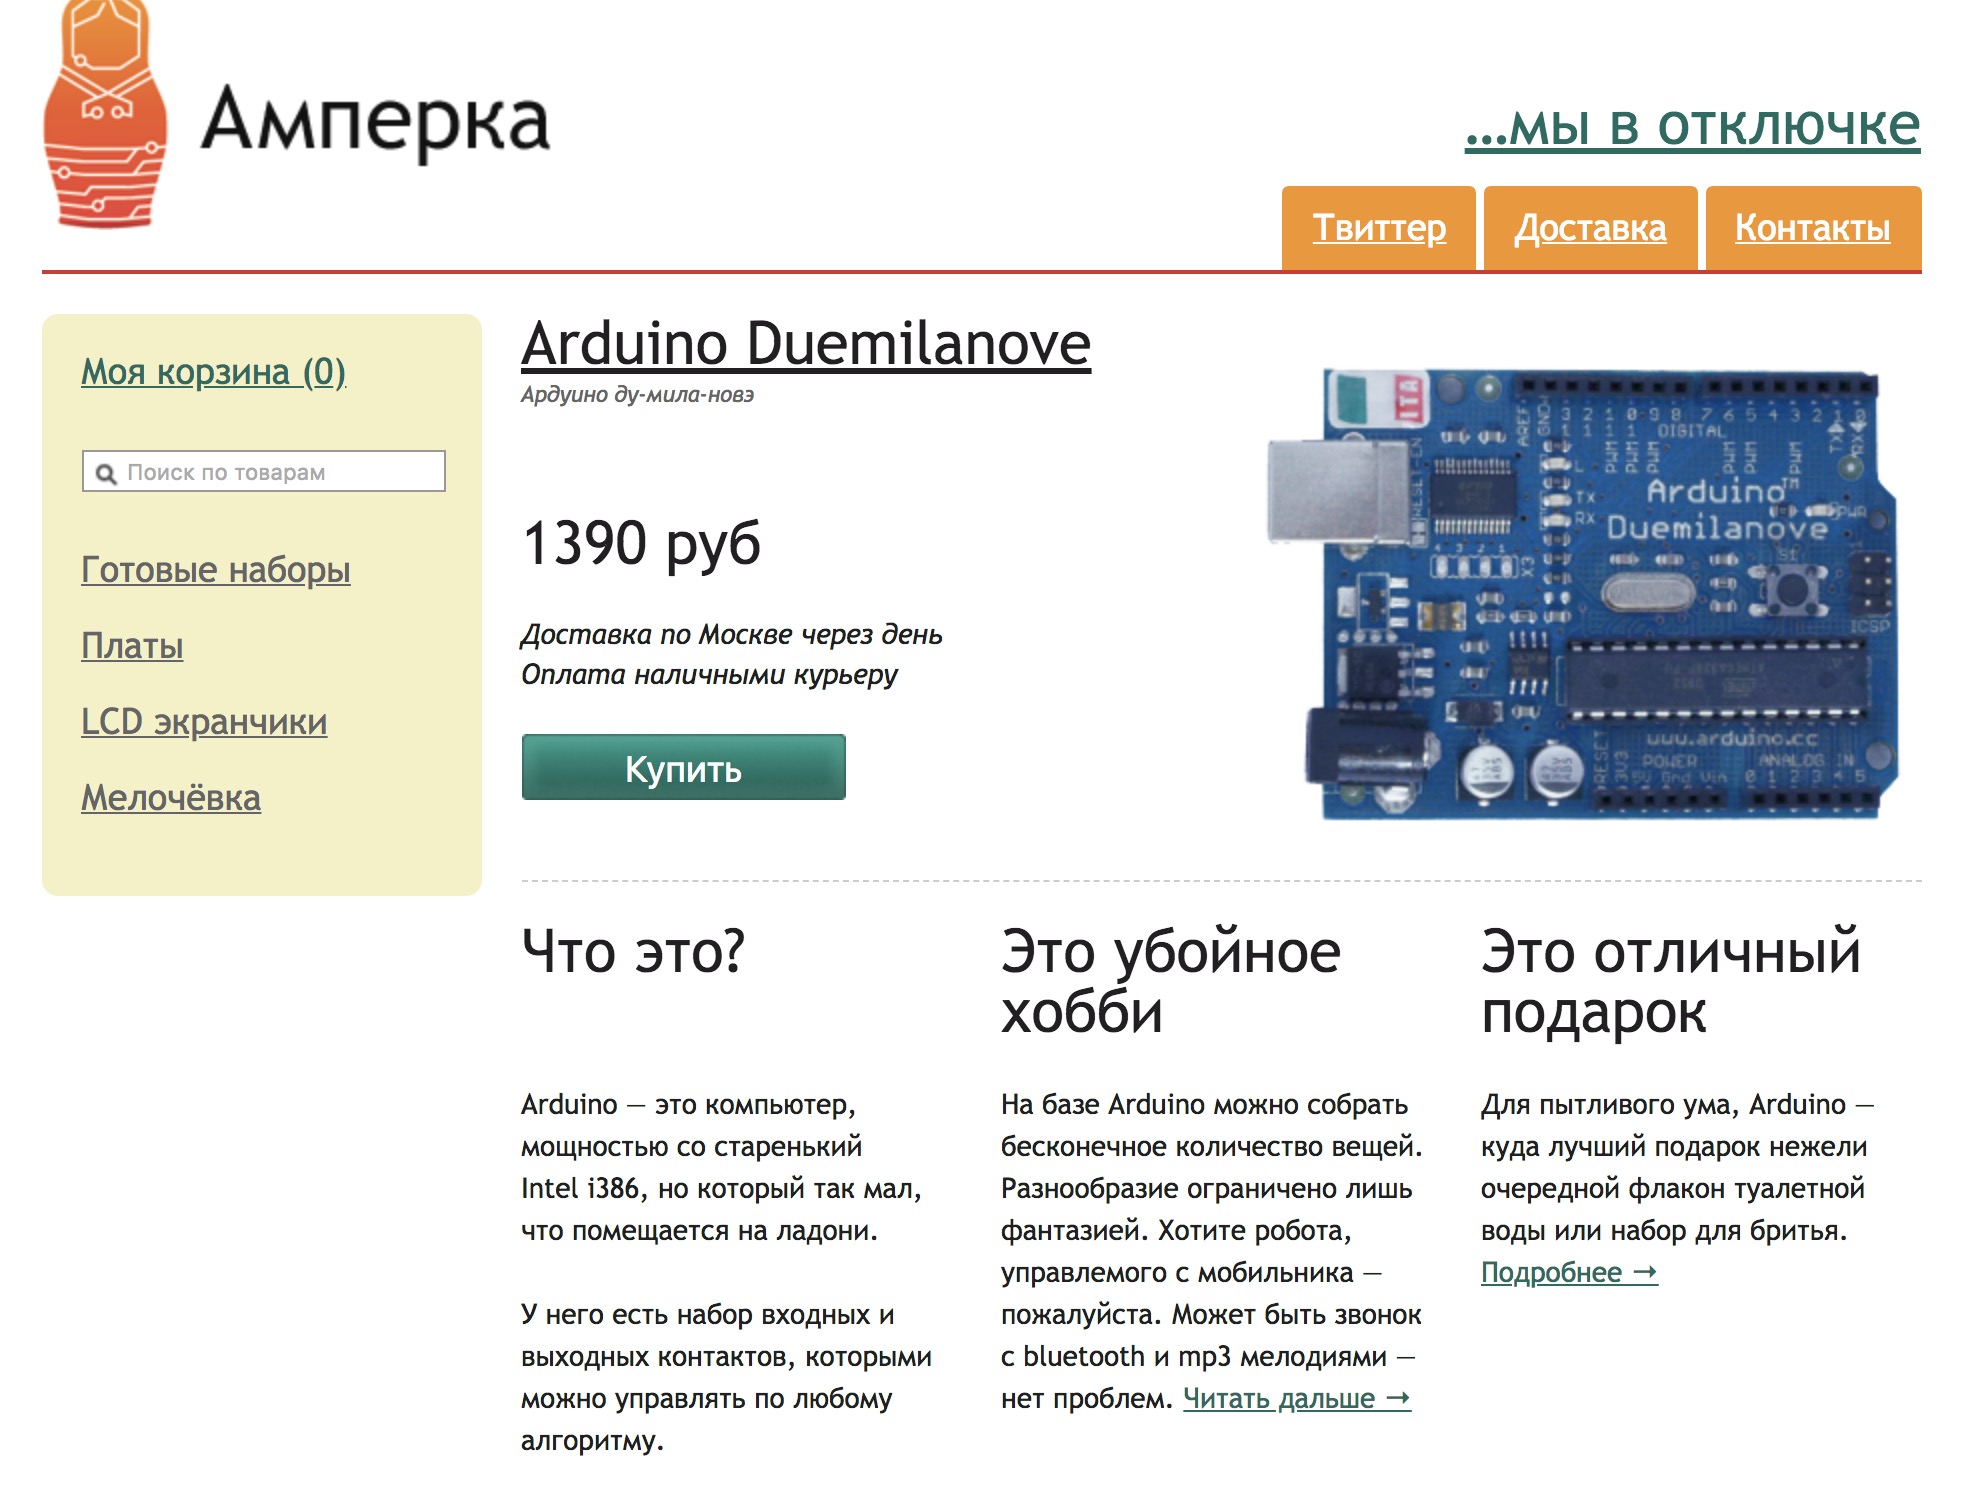 Первая версия сайта «Амперки» в 2010 году